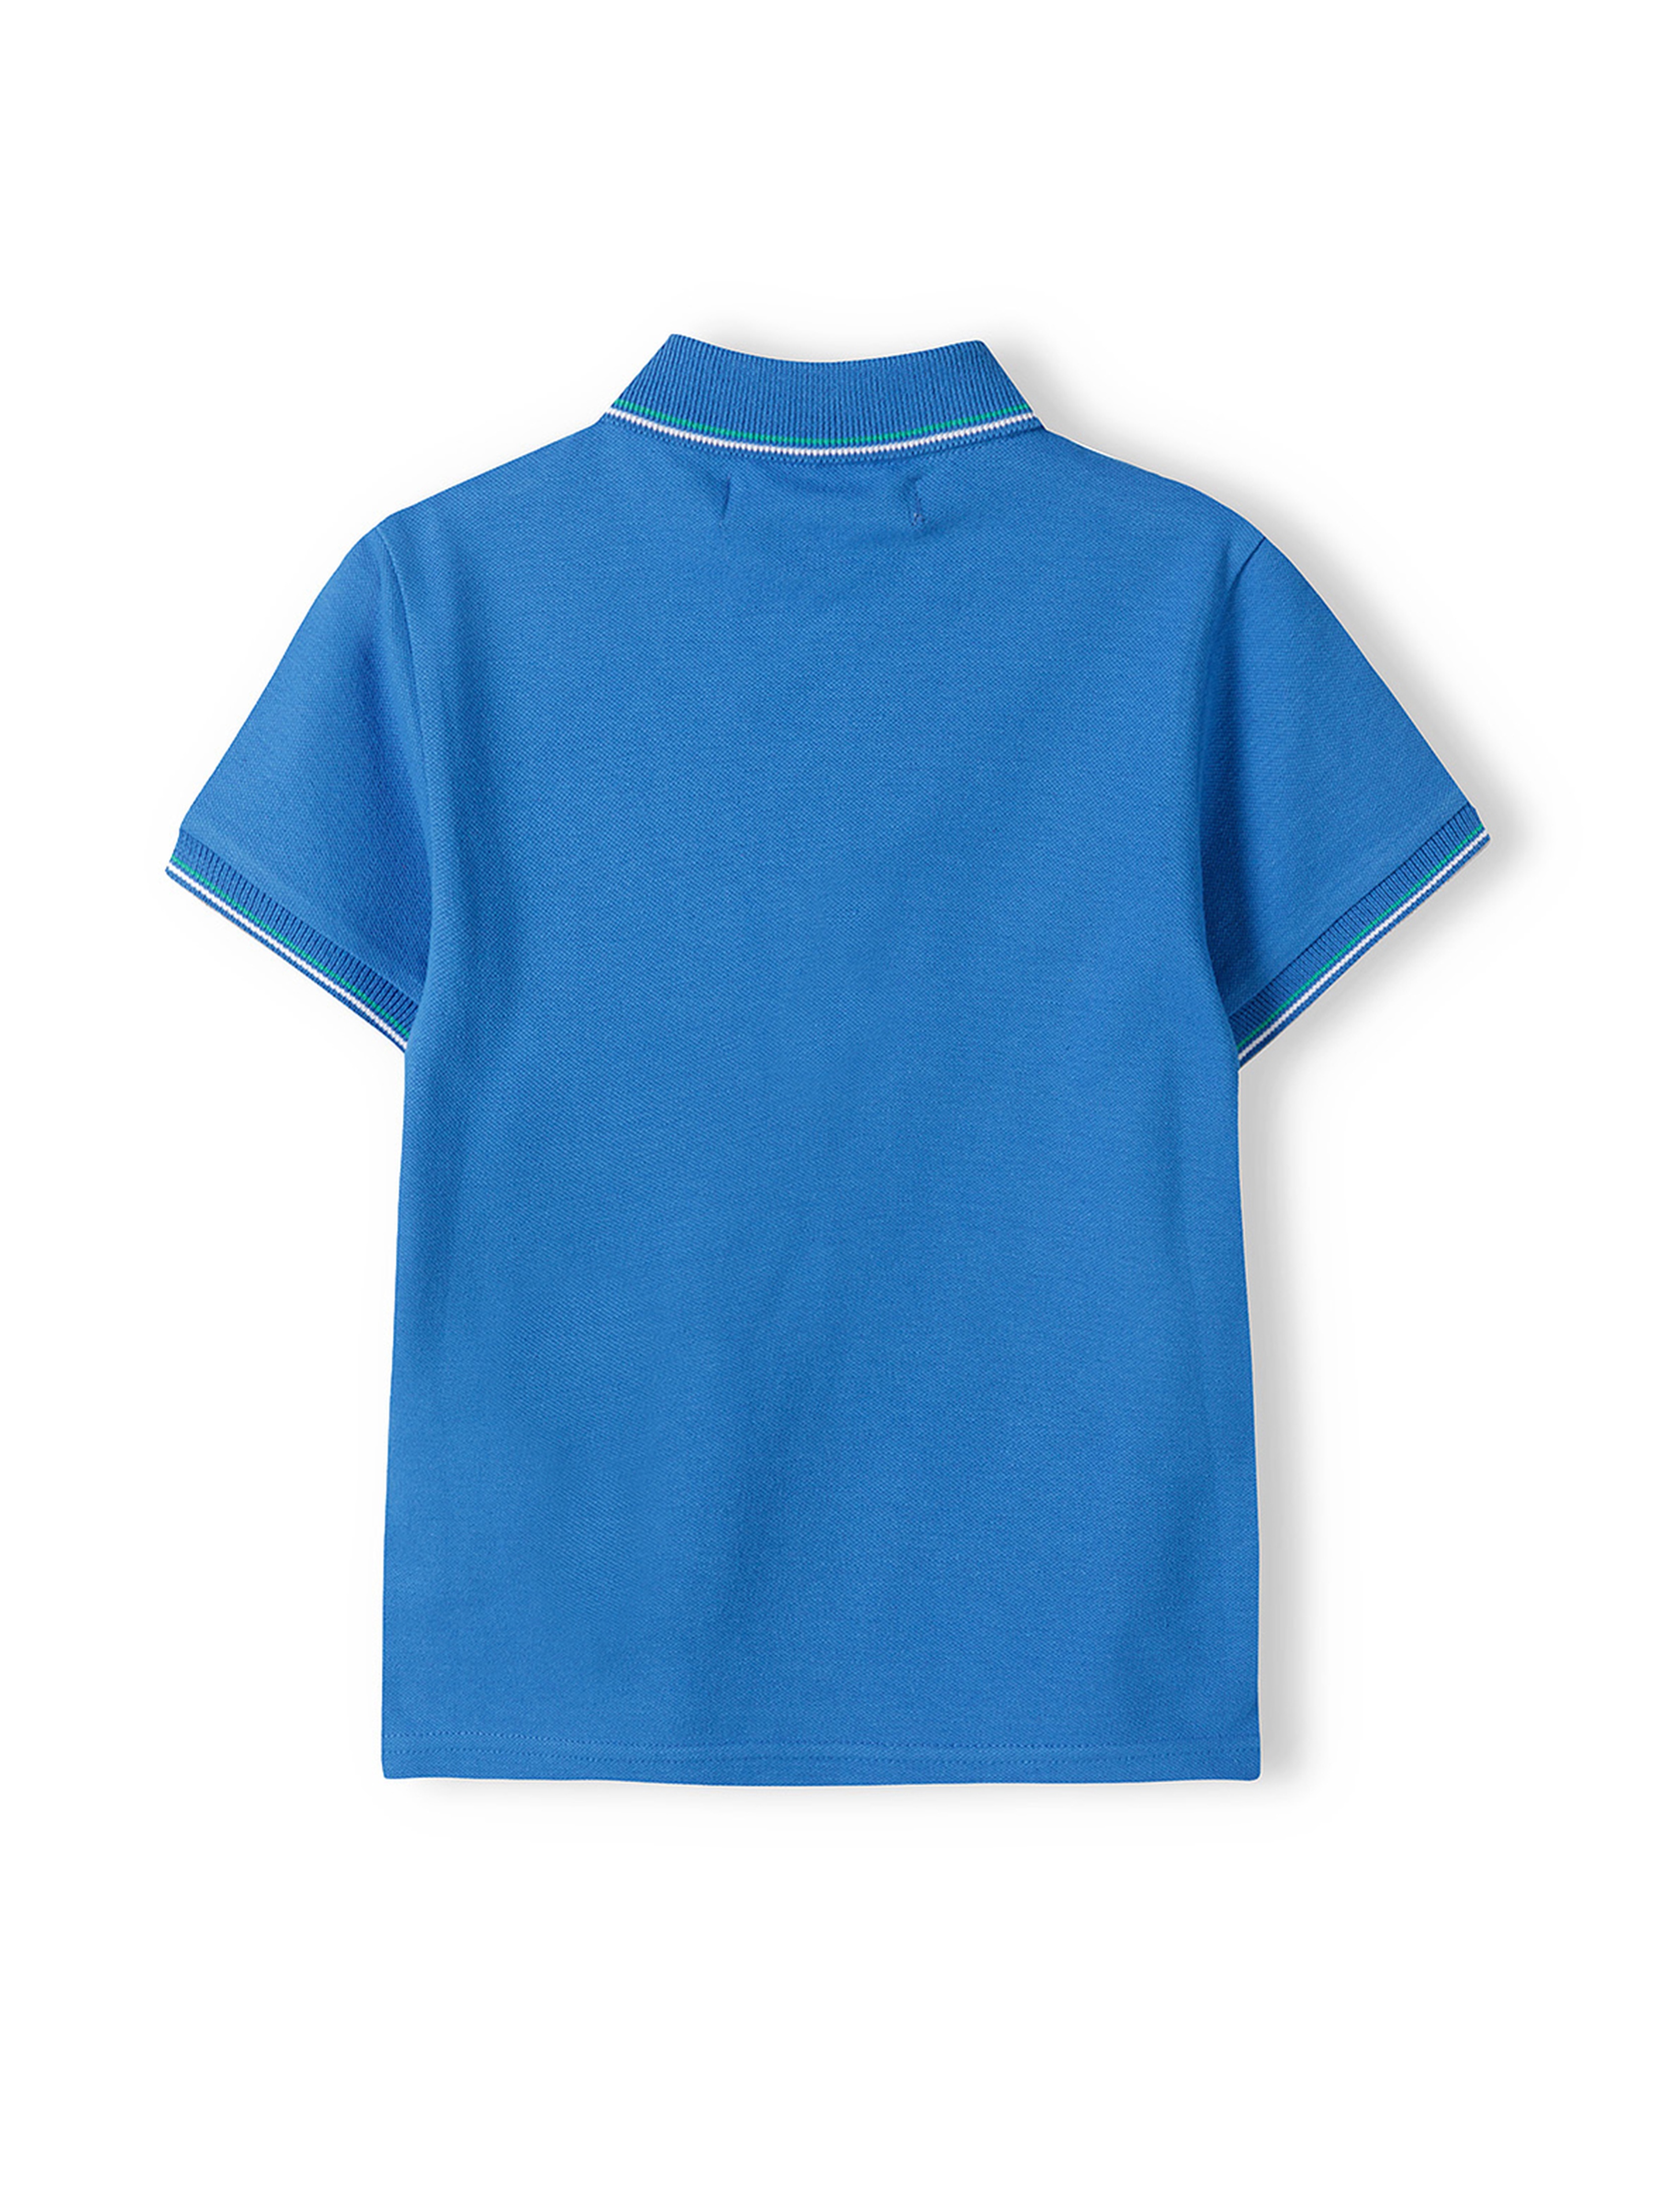 Bluzka polo dla chłopca z krótkim rękawem- niebieska